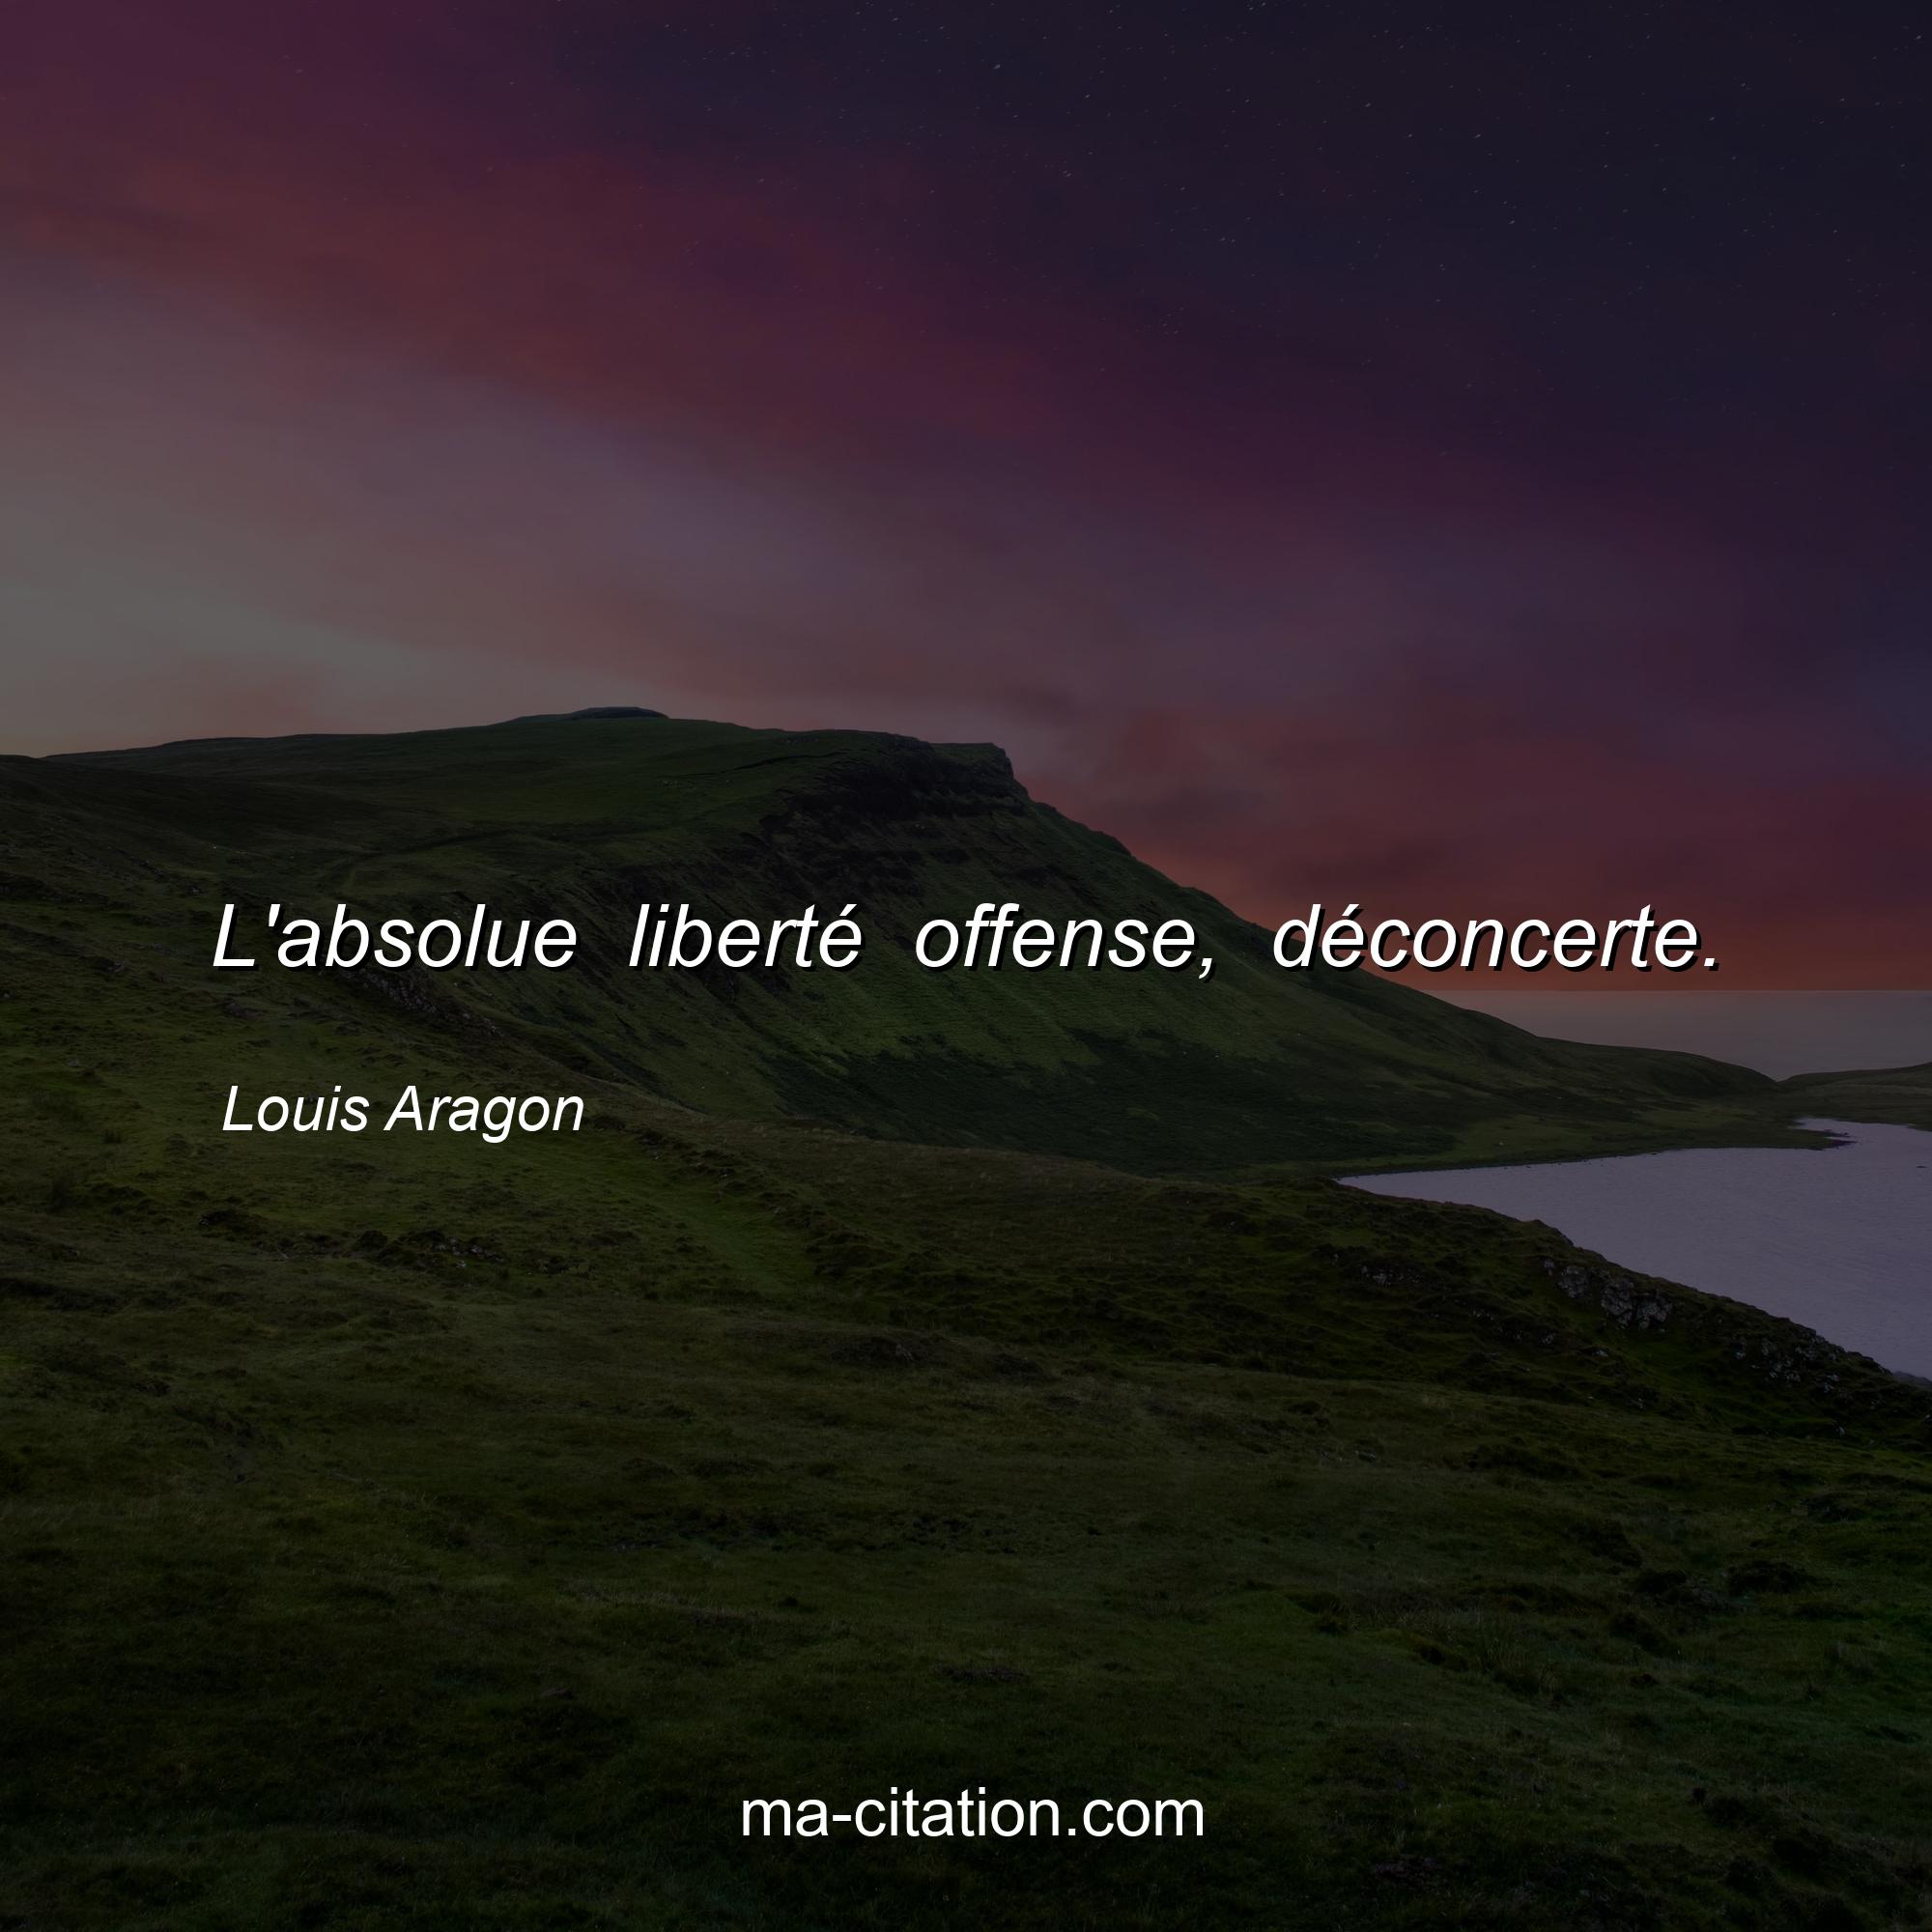 Louis Aragon : L'absolue liberté offense, déconcerte.